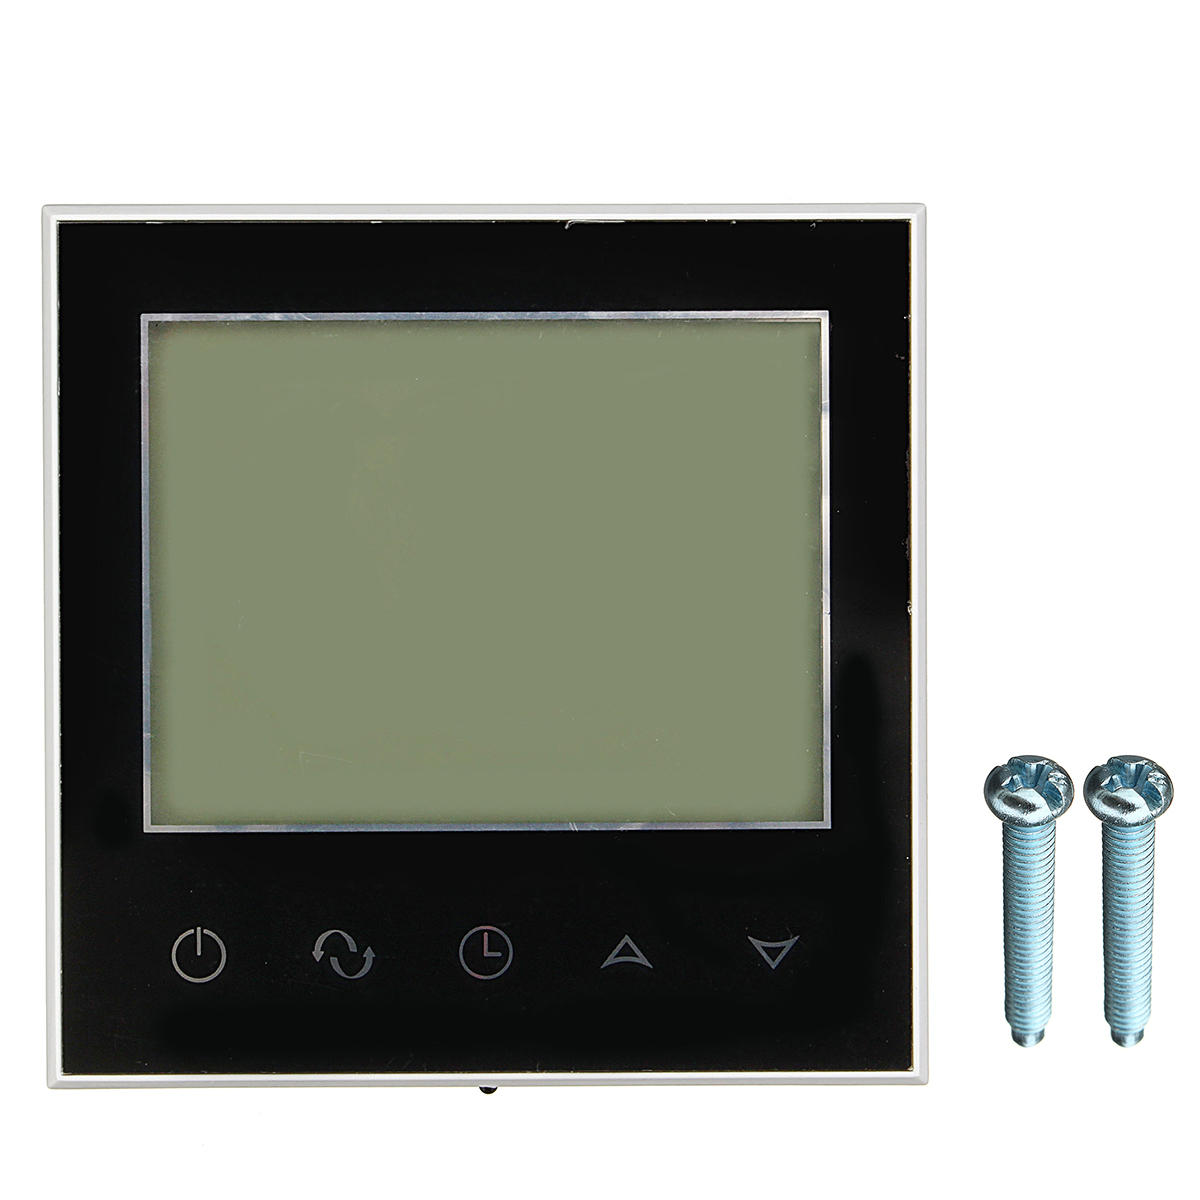 

Интеллектуальный программируемый термостат Цифровой регулятор температуры LCD Сенсорный экран